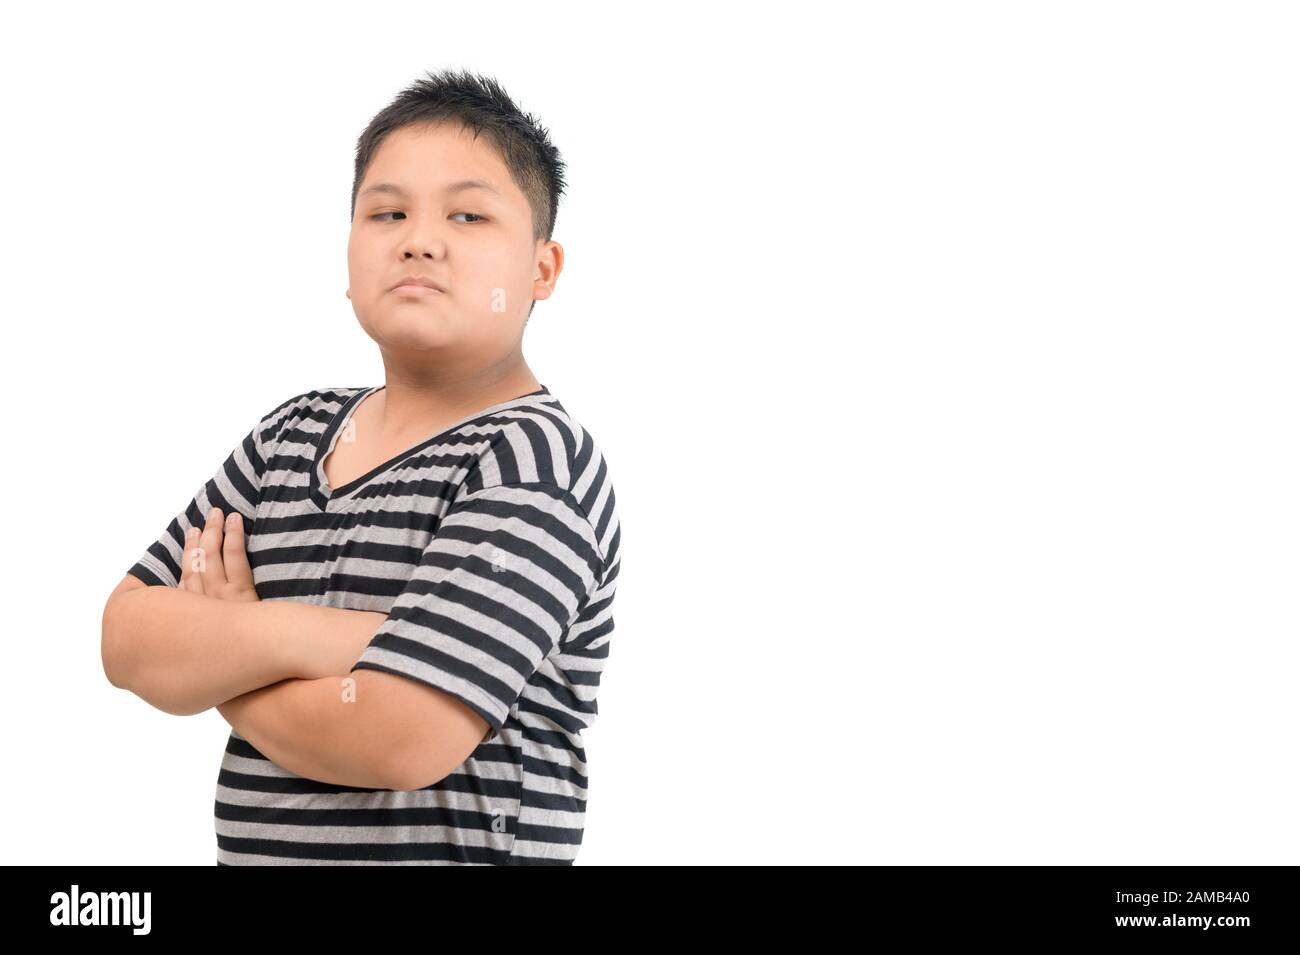 Kind Asian Junge Gesicht Ausdruck Neid, eifersüchtig isoliert weißer Hintergrund Negative menschliche Emotionen Gesichtsausdruck Gefühl Körpersprache Stockfoto